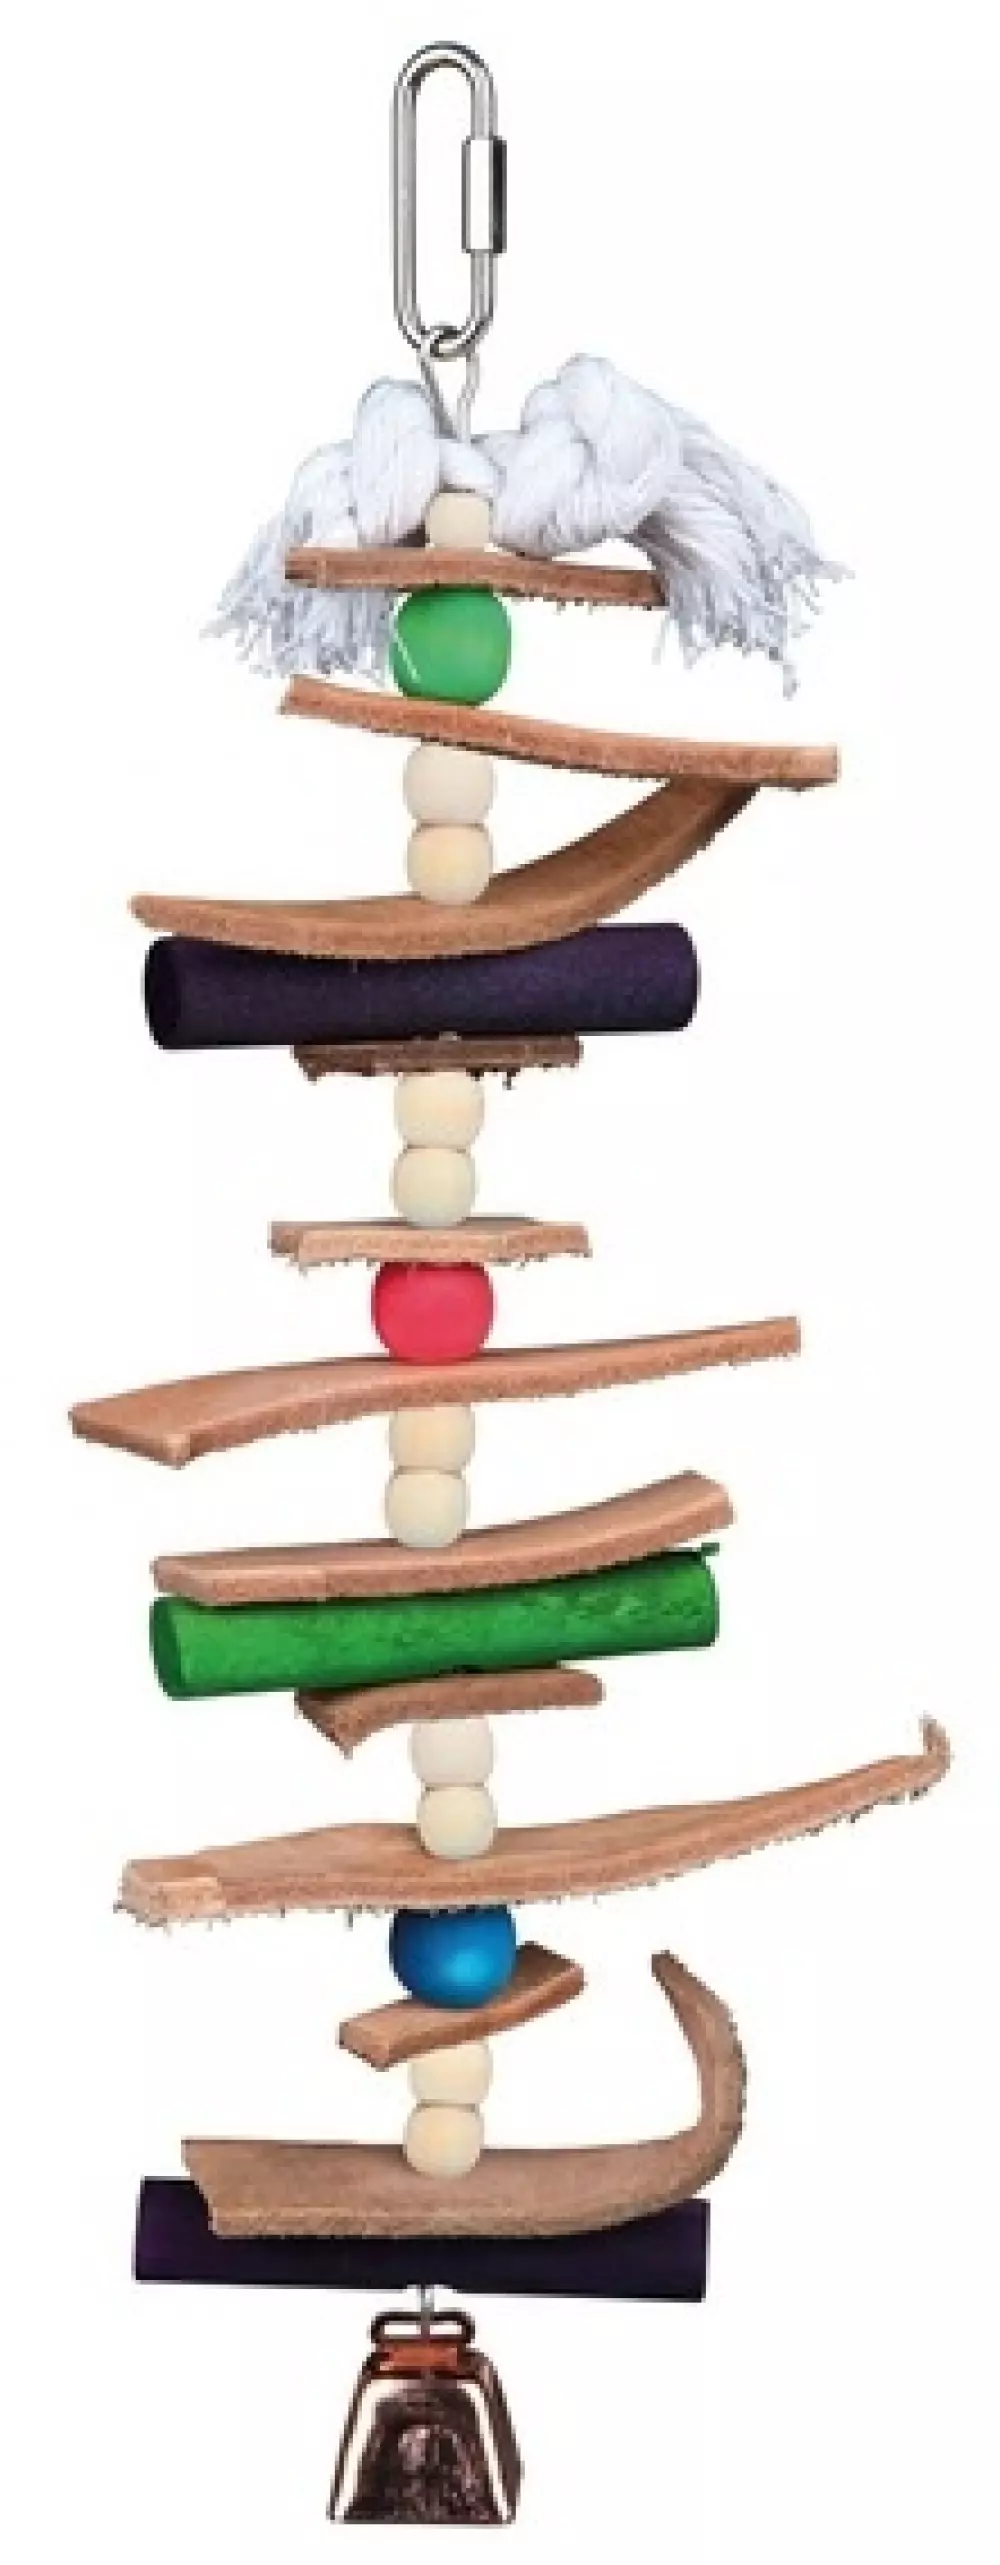 Fugleleke fargeglad med perler, 4011905589848, Fugleutstyr, Undulatutstyr, Eldorado, Træ legetøj med læder & perler, 28 cm, Fargeglad